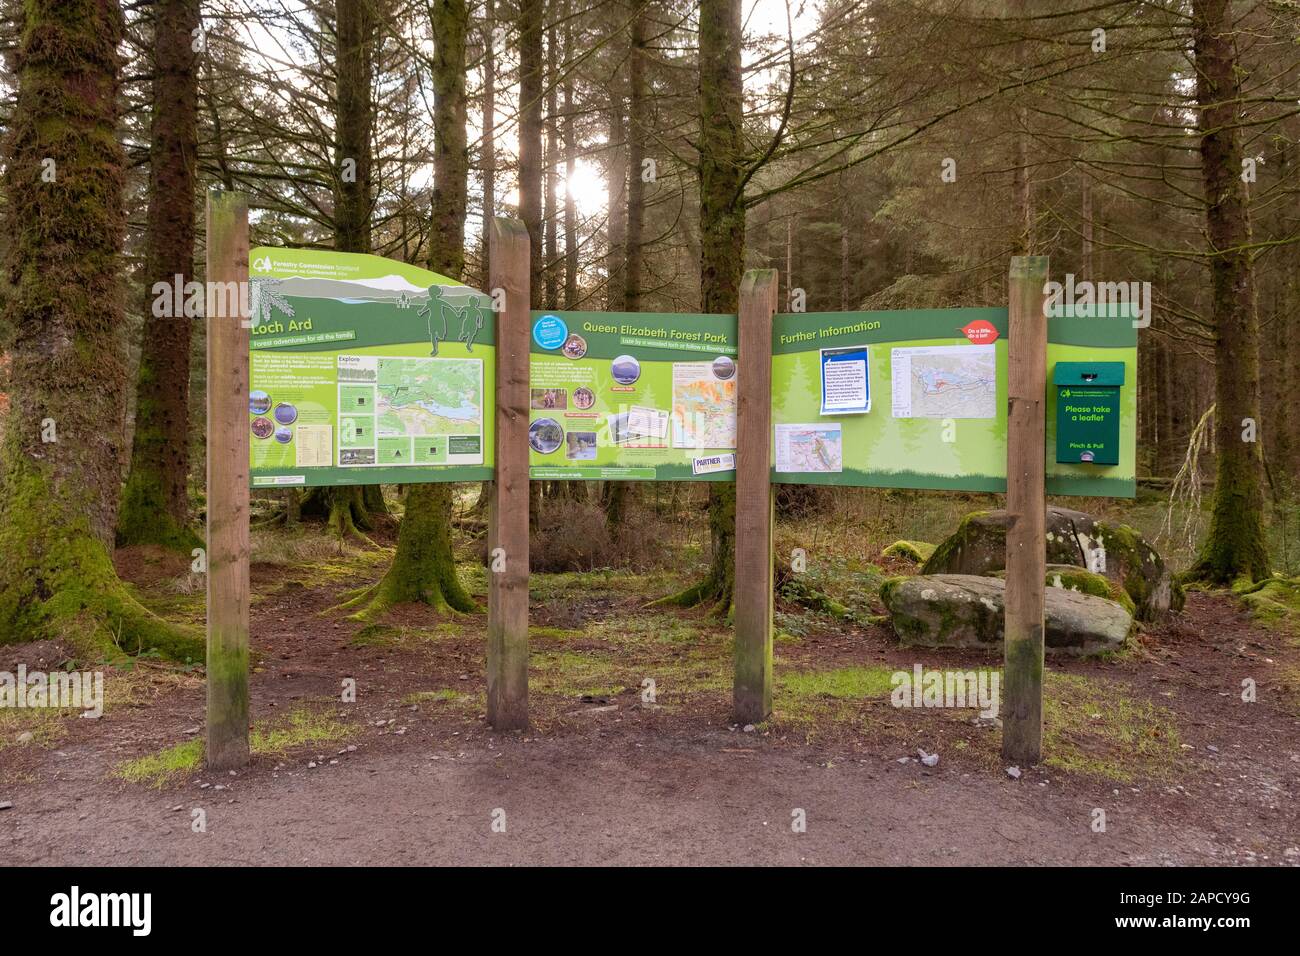 Queen Elizabeth forest park information board at Loch Ard, near Aberfoyle, Scotland, UK Stock Photo